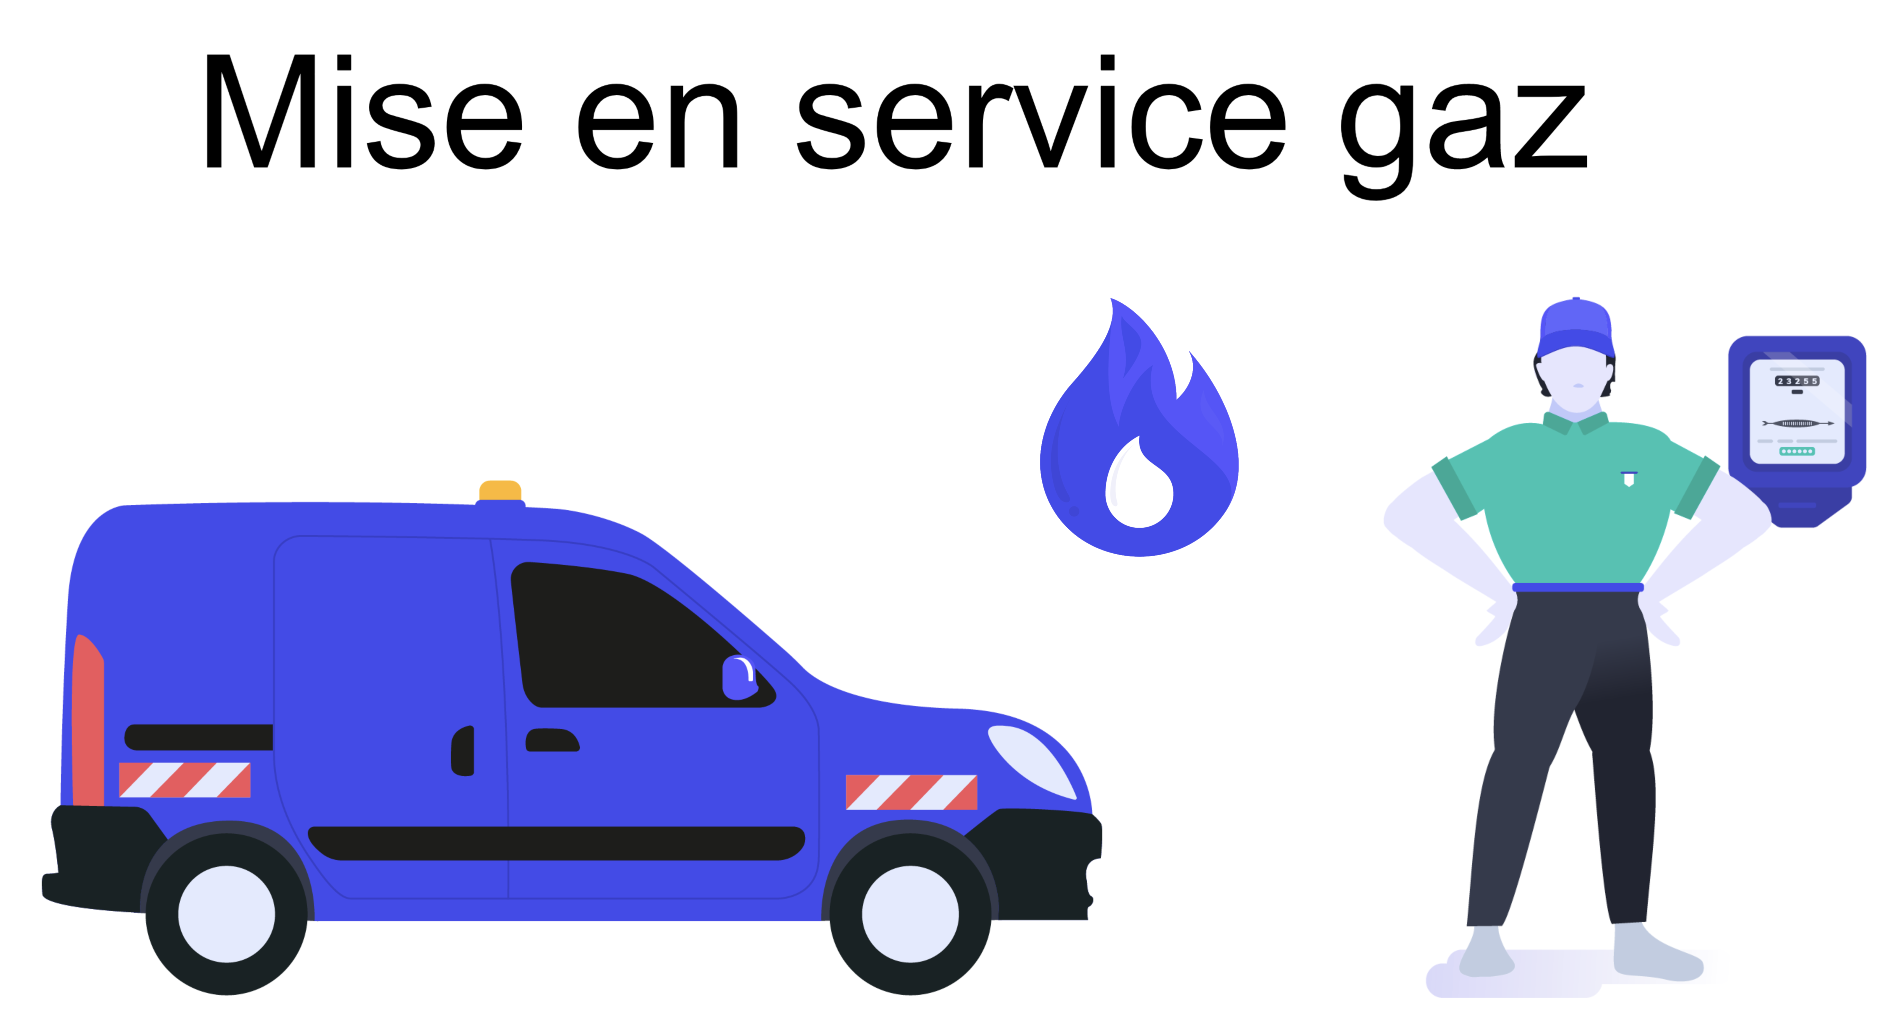 Mise en service gaz